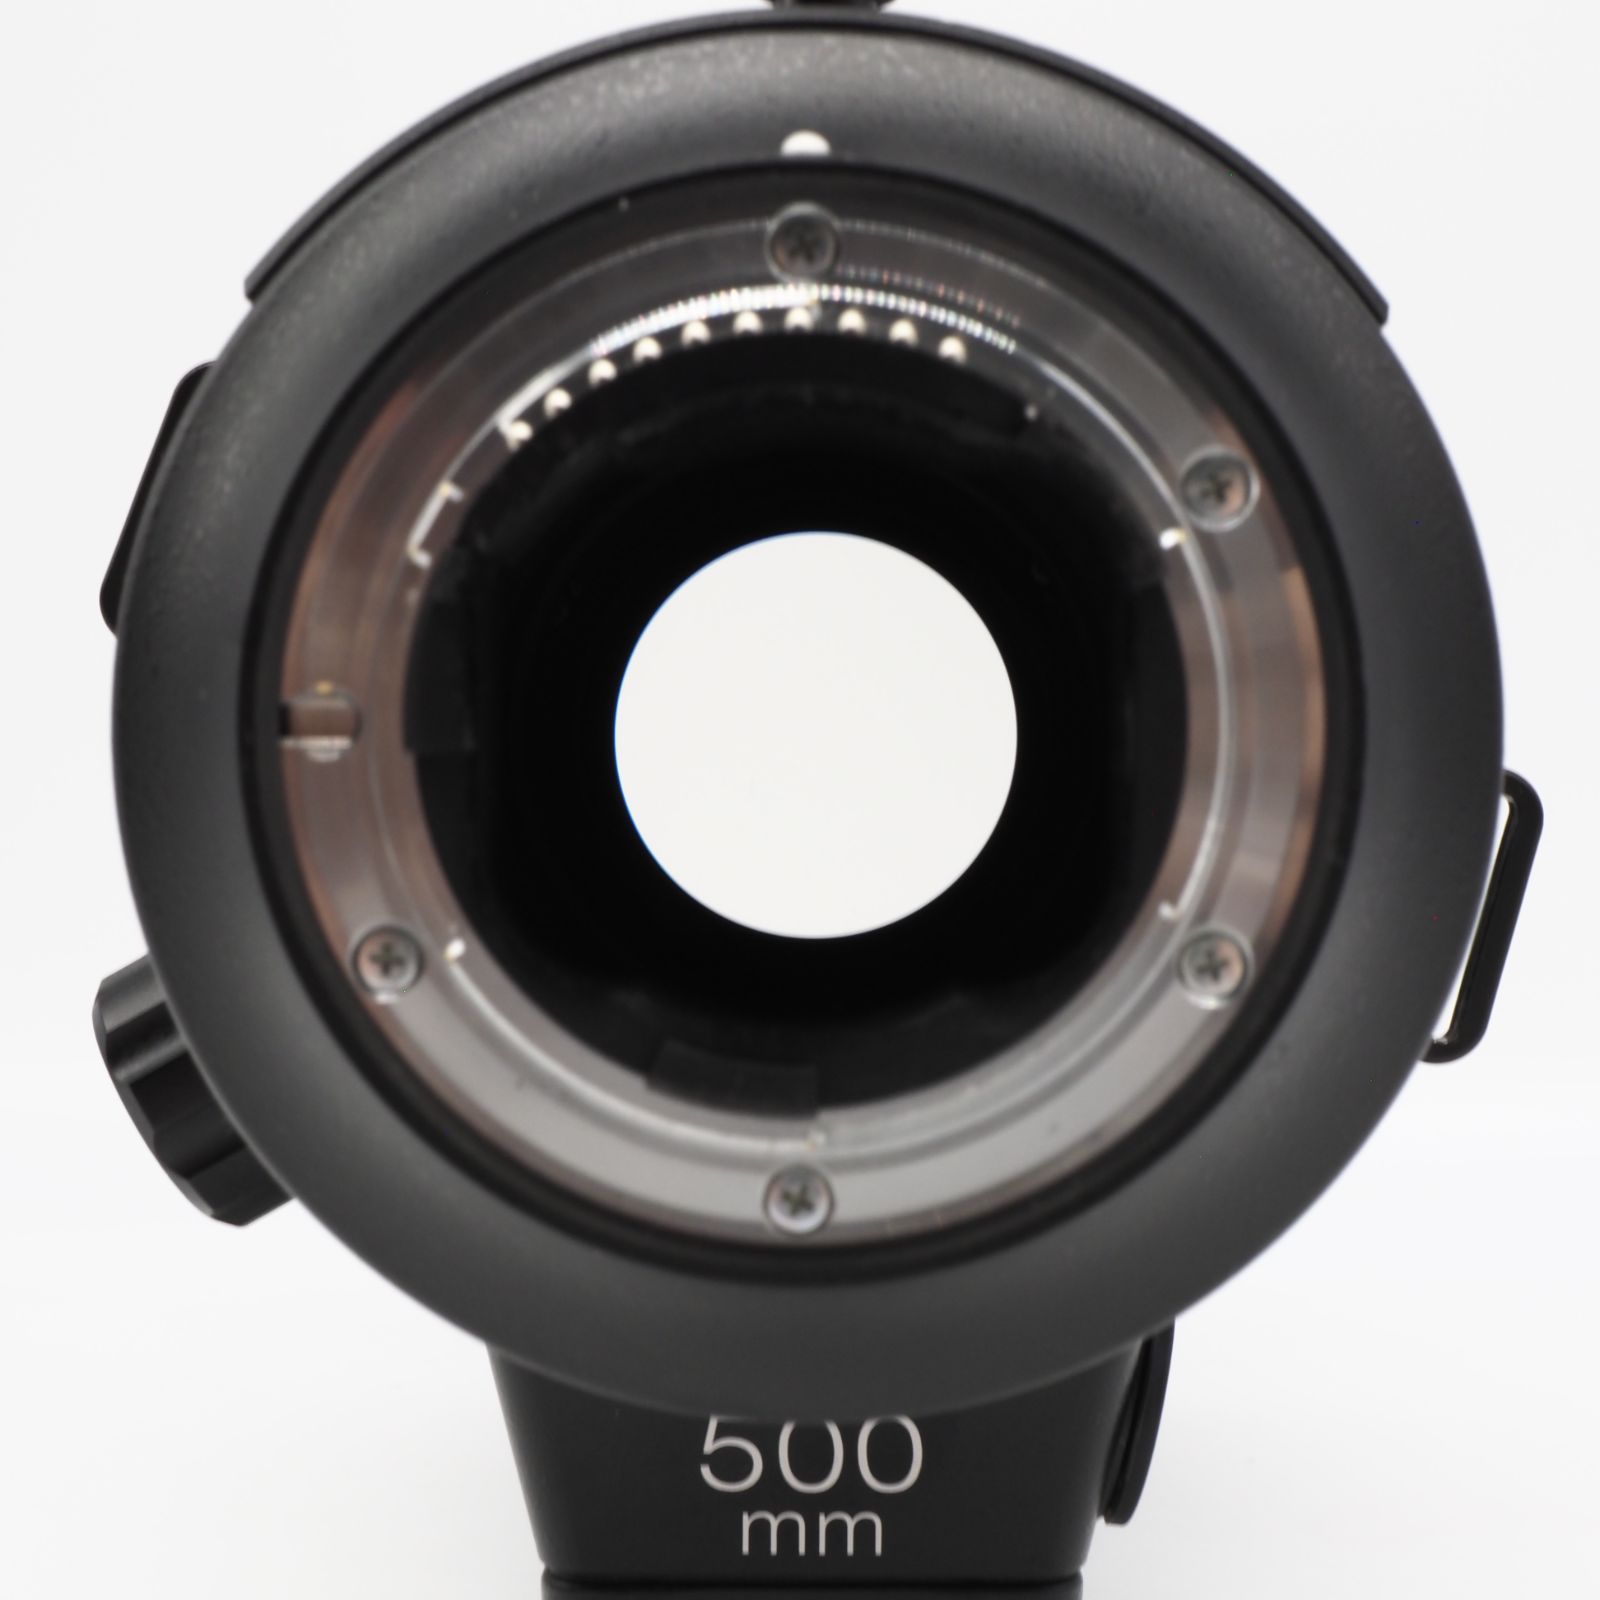 Nikon 単焦点レンズ AF-S NIKKOR 500mm f/4E FL ED VR - テイクス